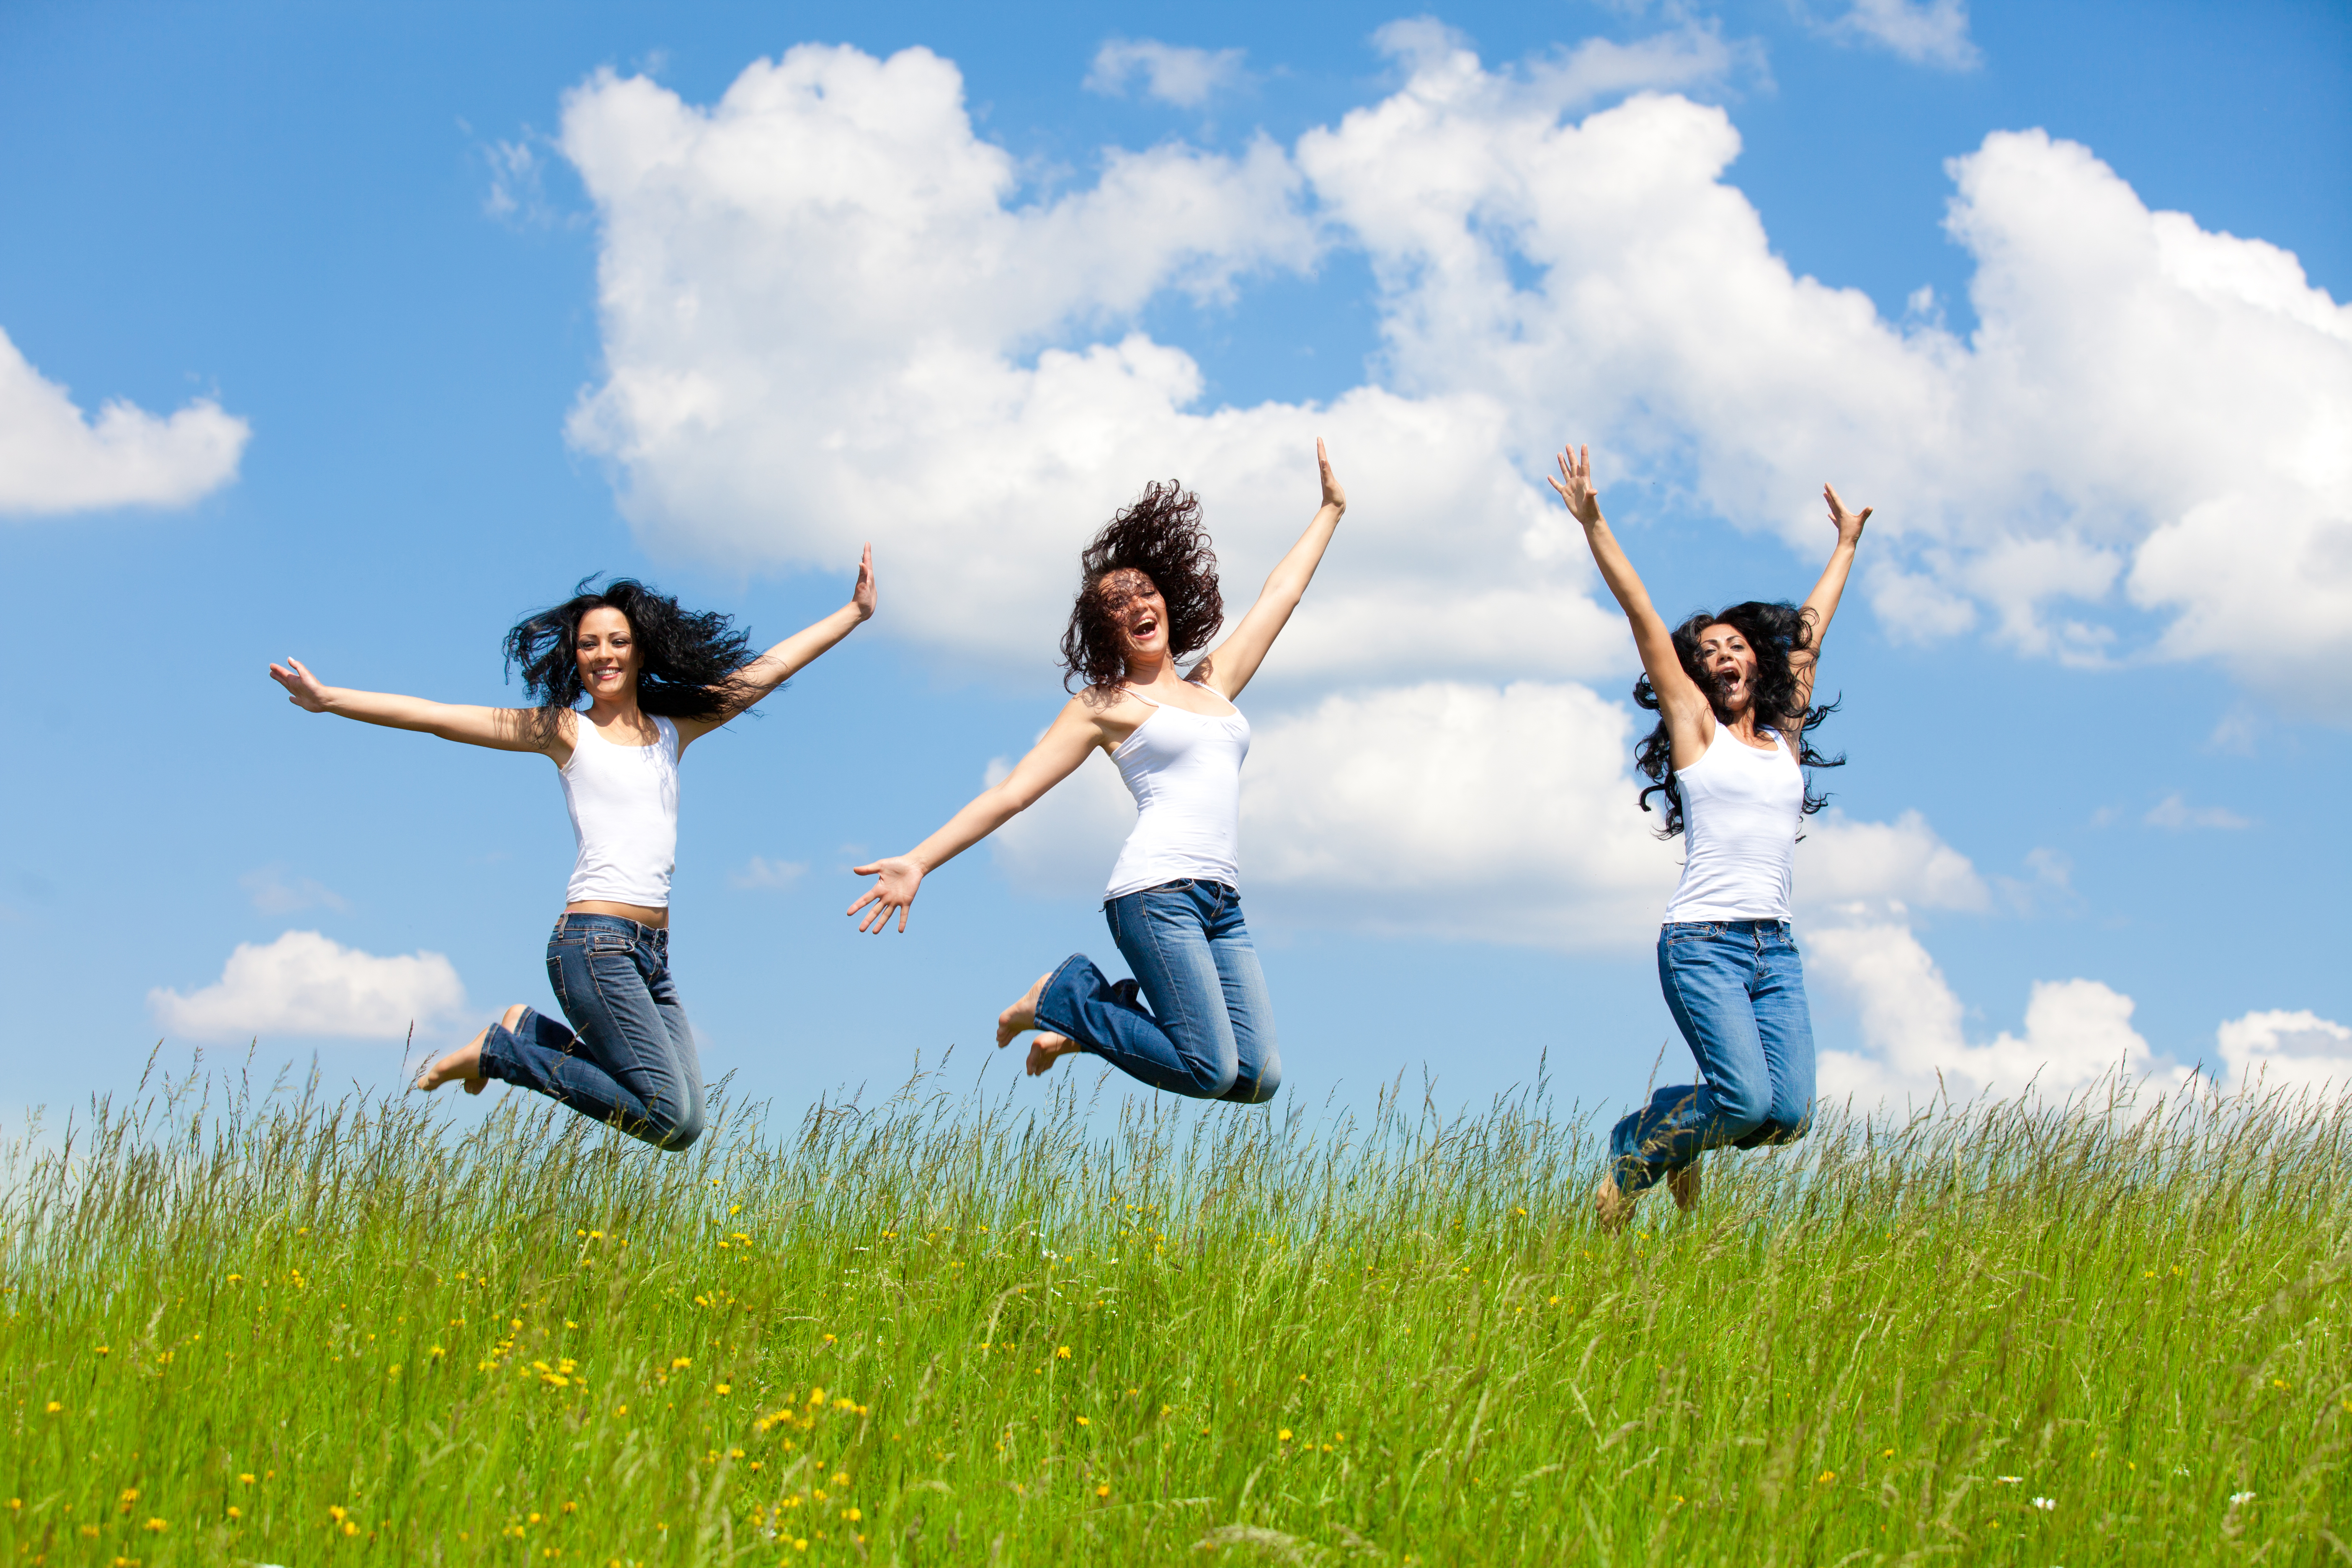 Graphic photo. Радость. Радости и счастья. Девушка в прыжке. Счастливые люди на природе.